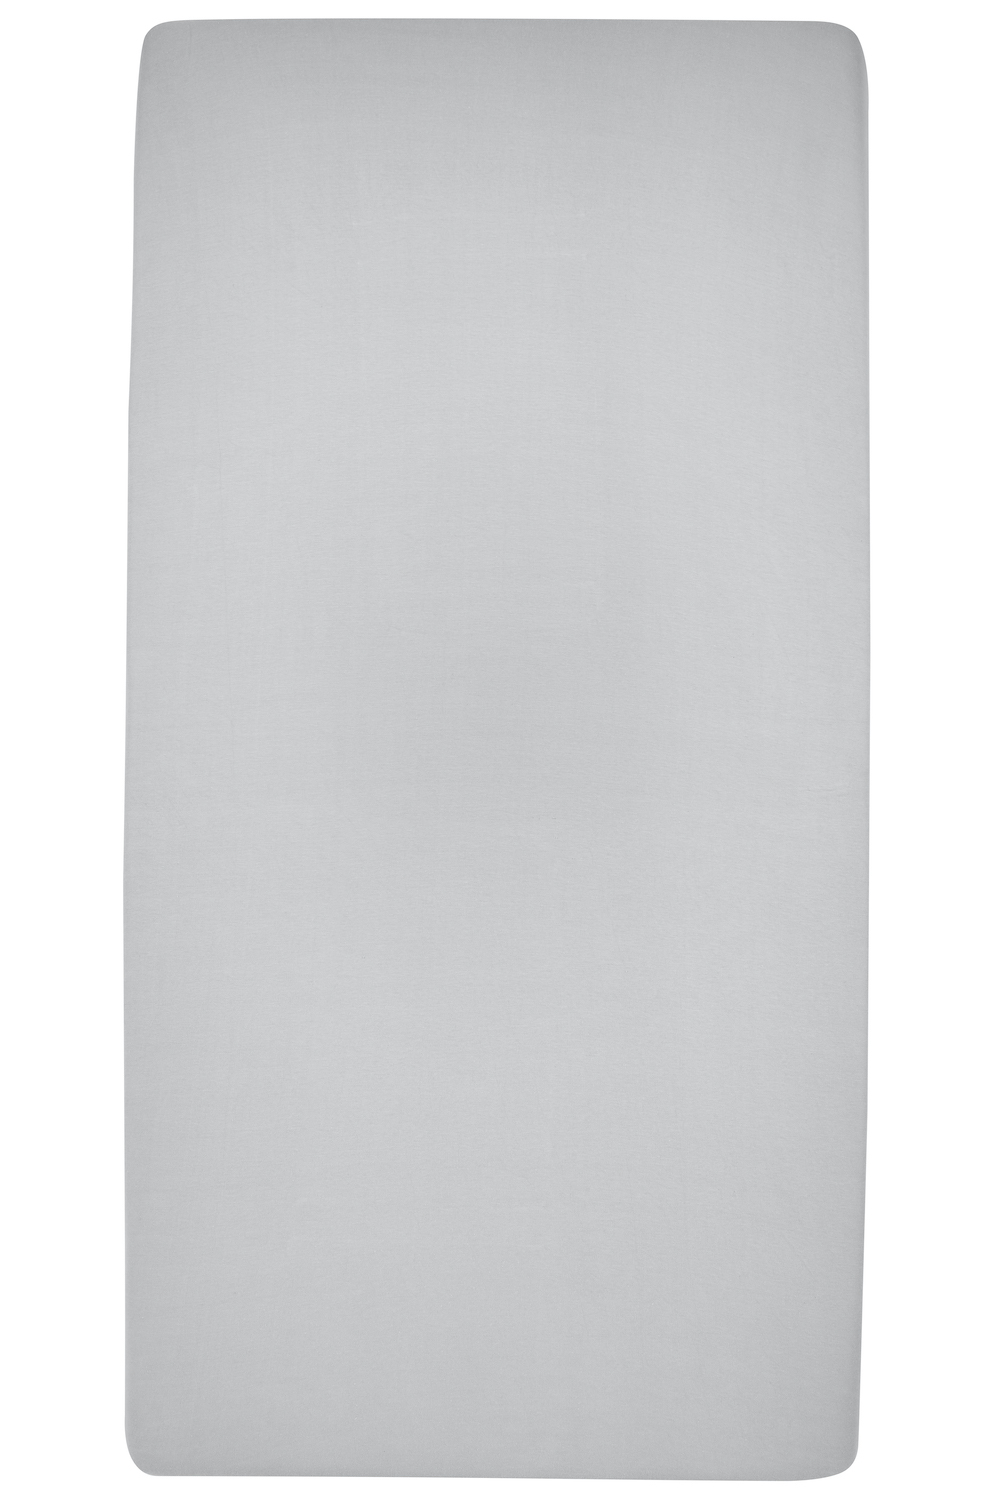 Hoeslaken eenpersoonsbed Uni - light grey - 80x200cm